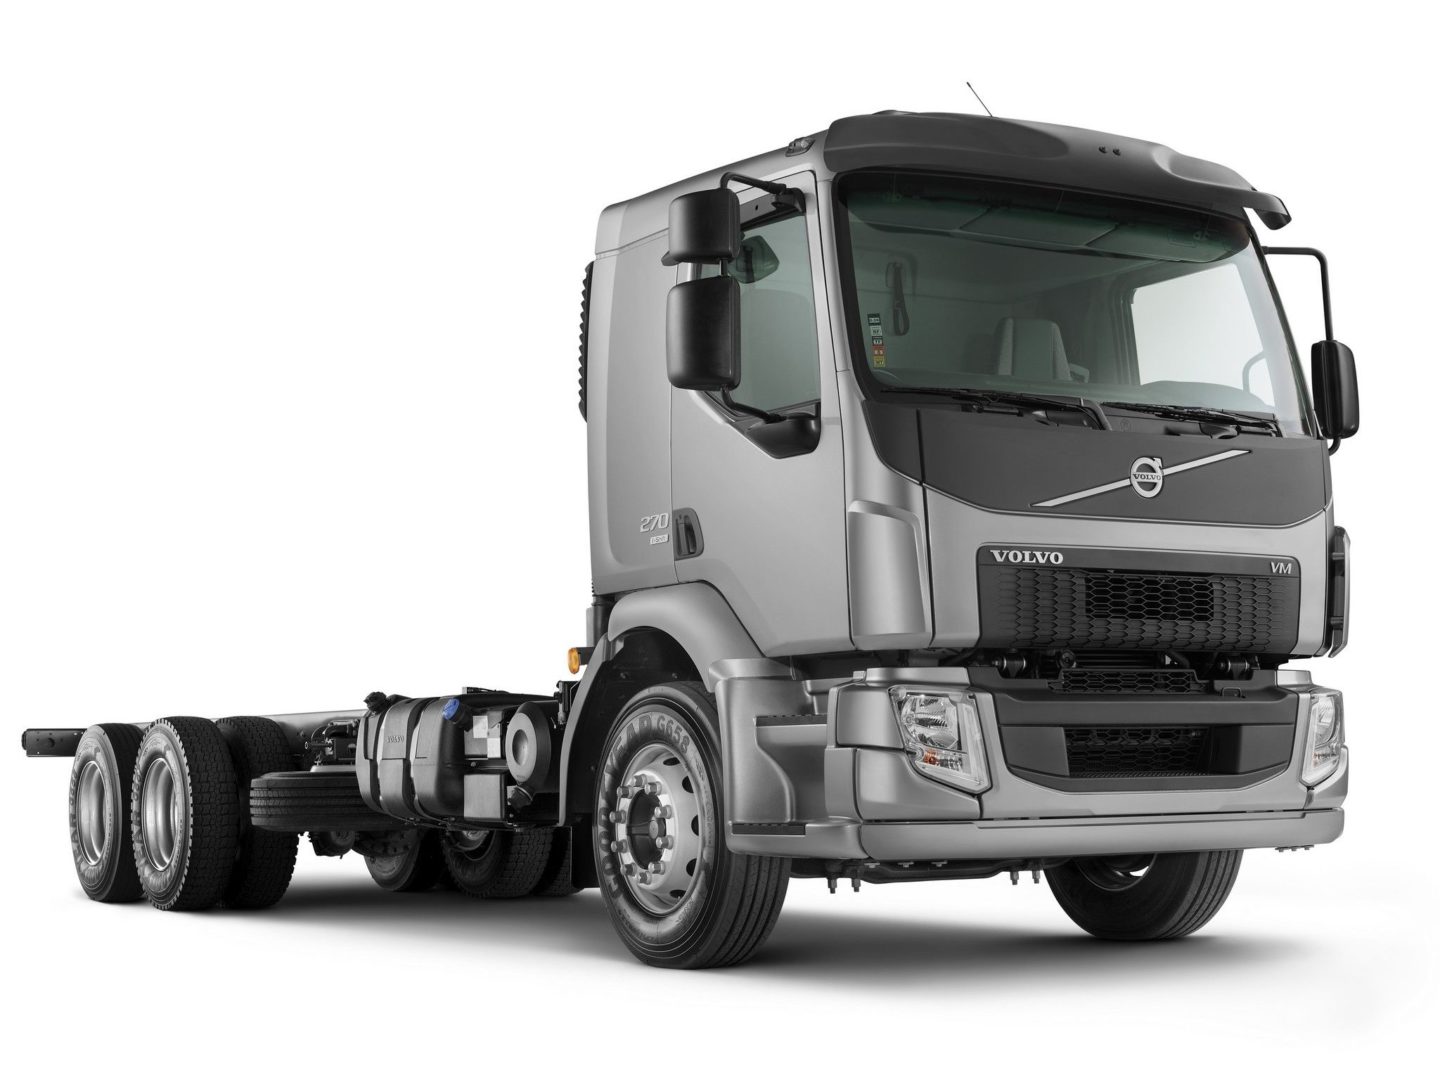 Imagem representativa do caminhão Volvo VM 270 cinza. 